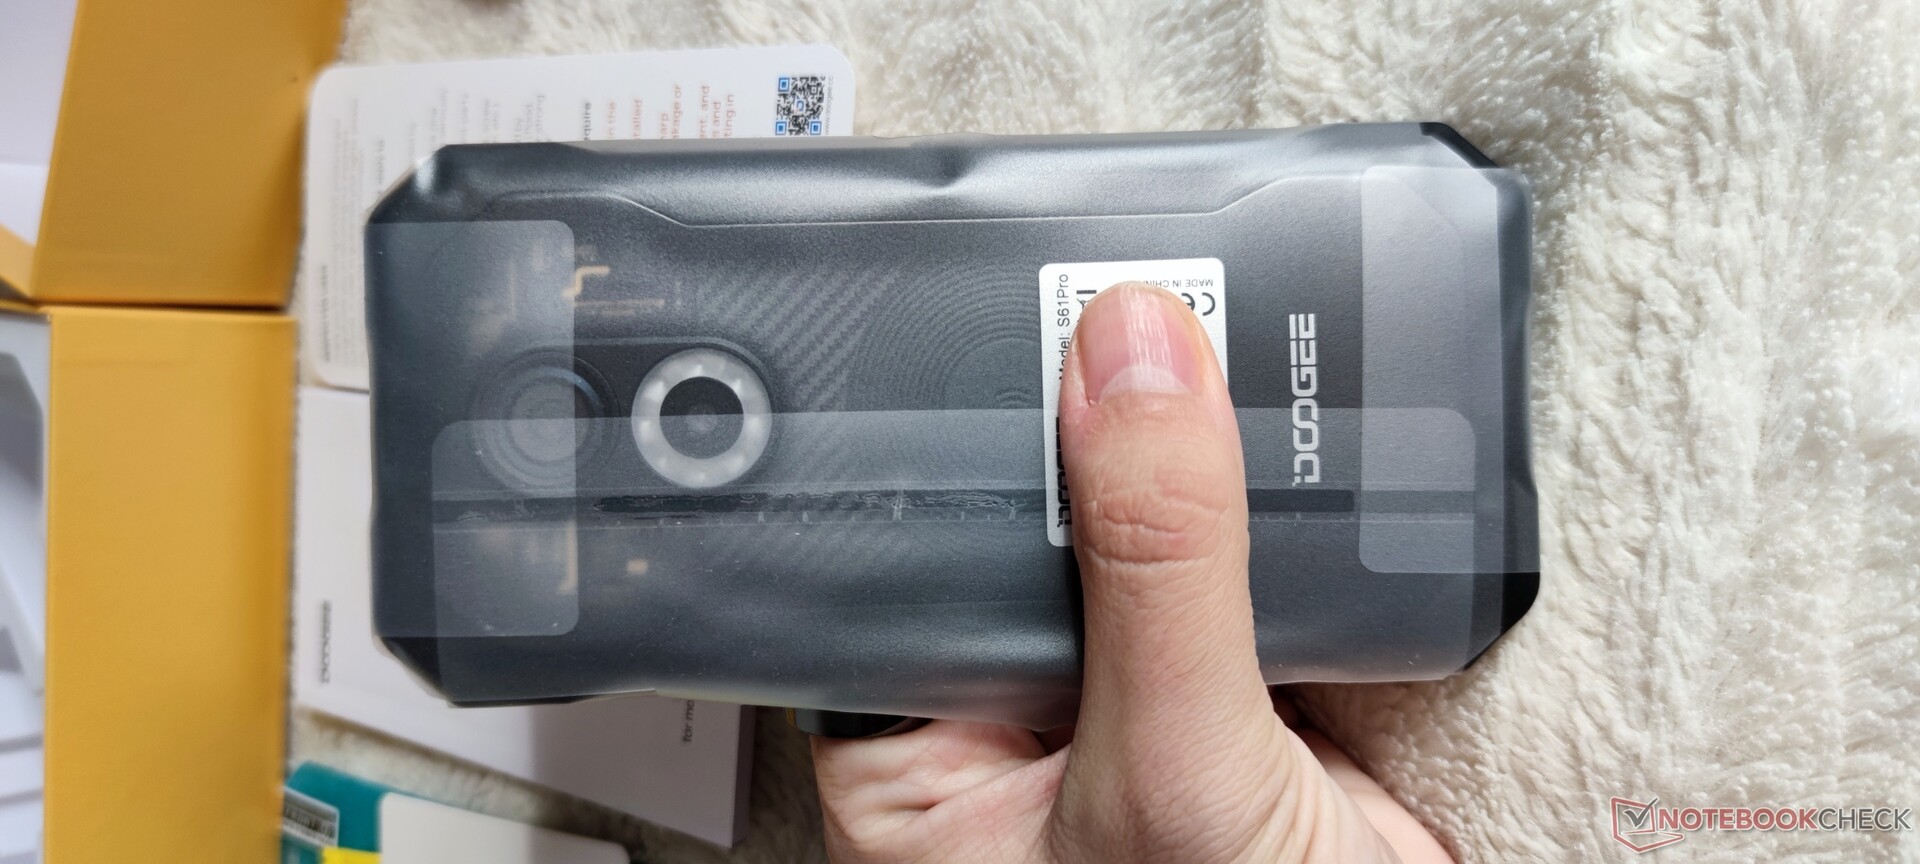 Smartphones resistentes Doogee S61